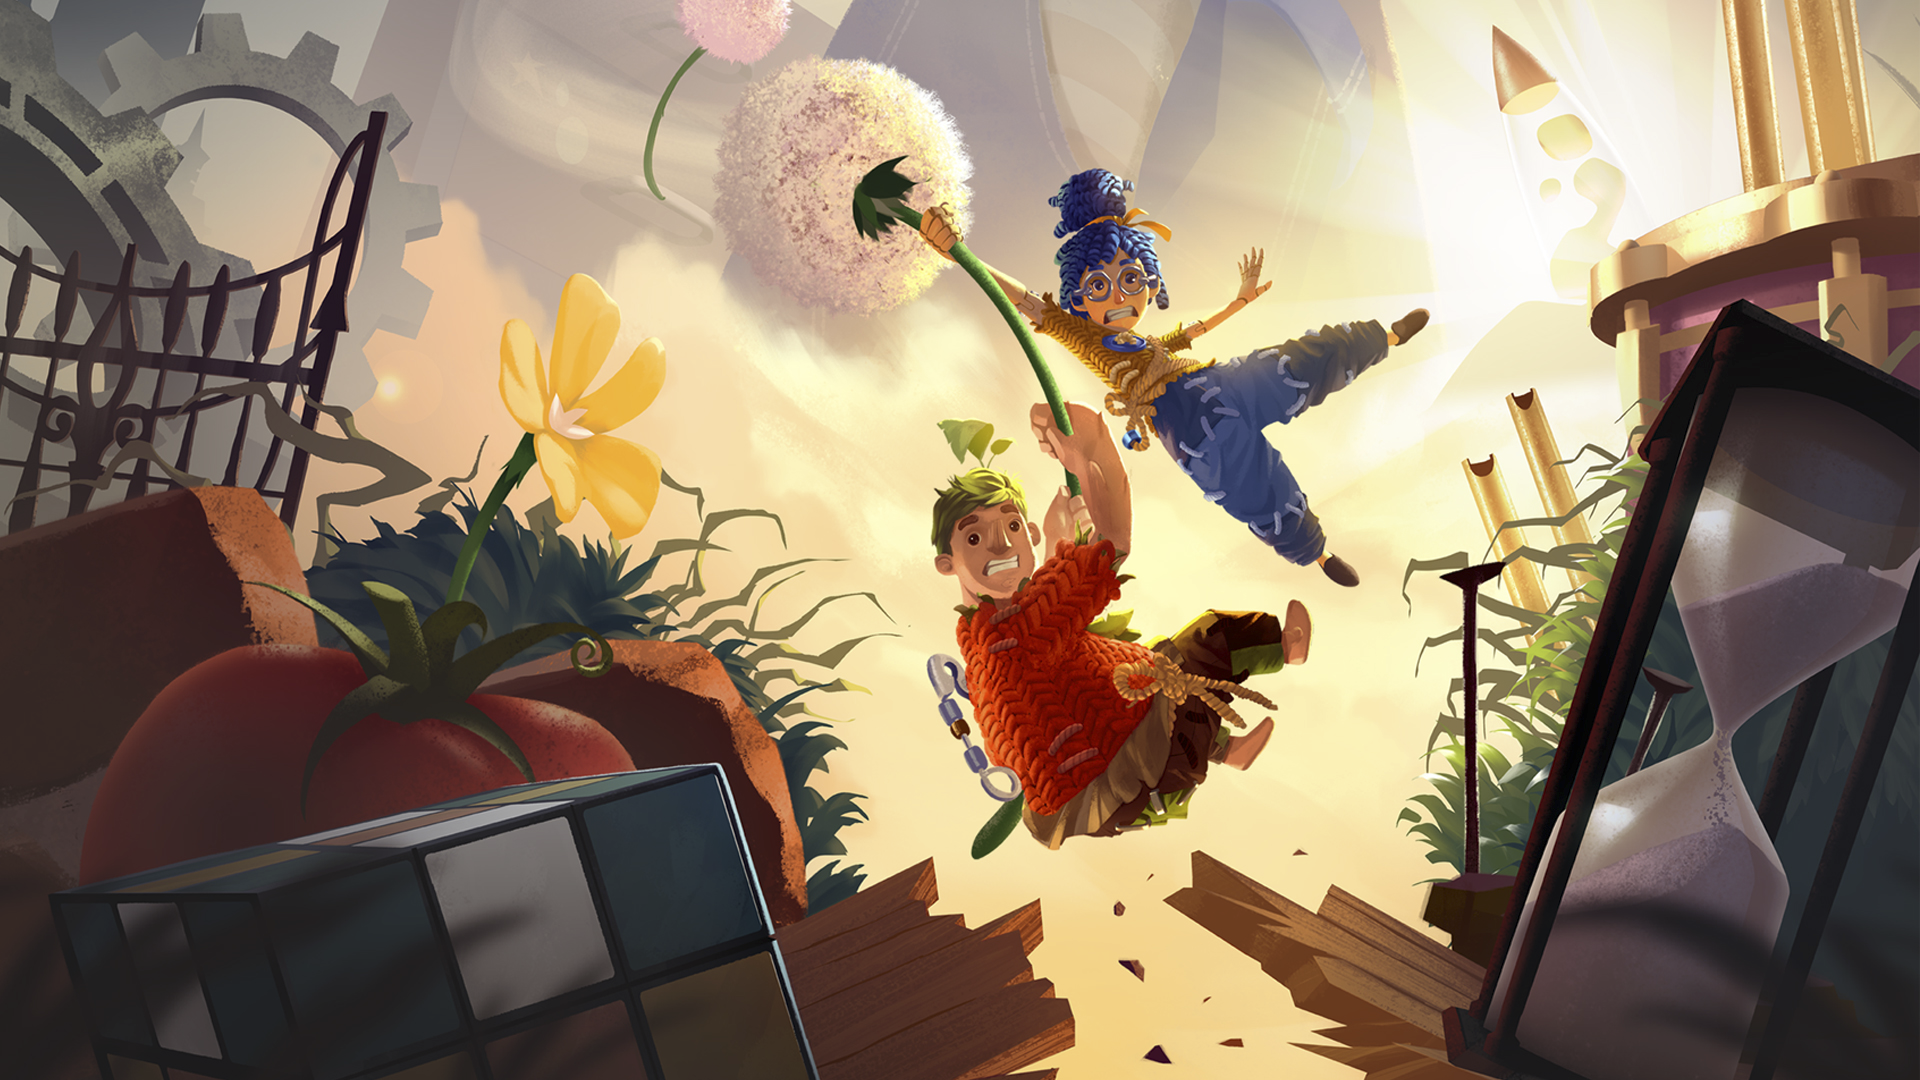 It Takes Two konceptualni umetnički prikaz sa glavnim likovima May i Cody jašući na cvetu maslačka kroz vazduh.